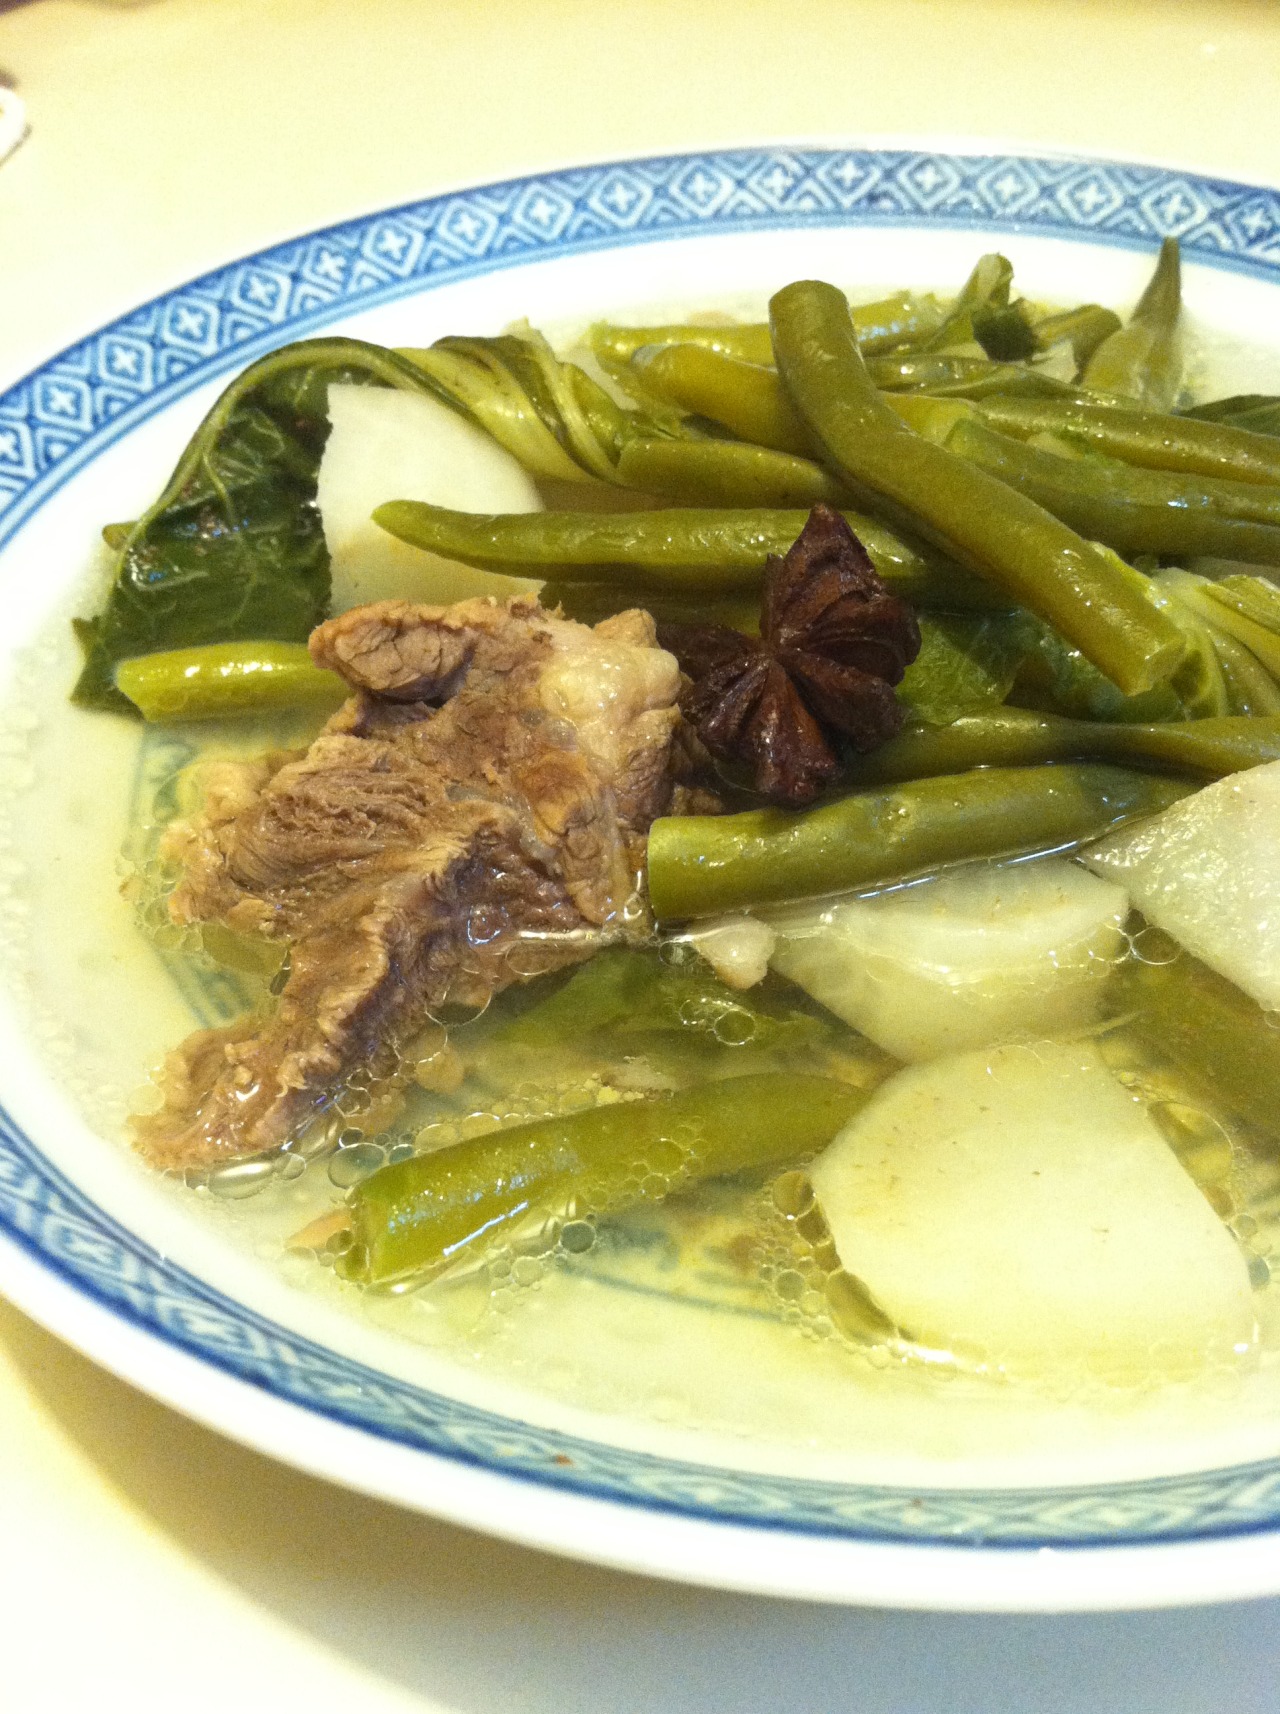 Filipino Food - Nilagang Baka (Boiled Beef) A warm beef broth...